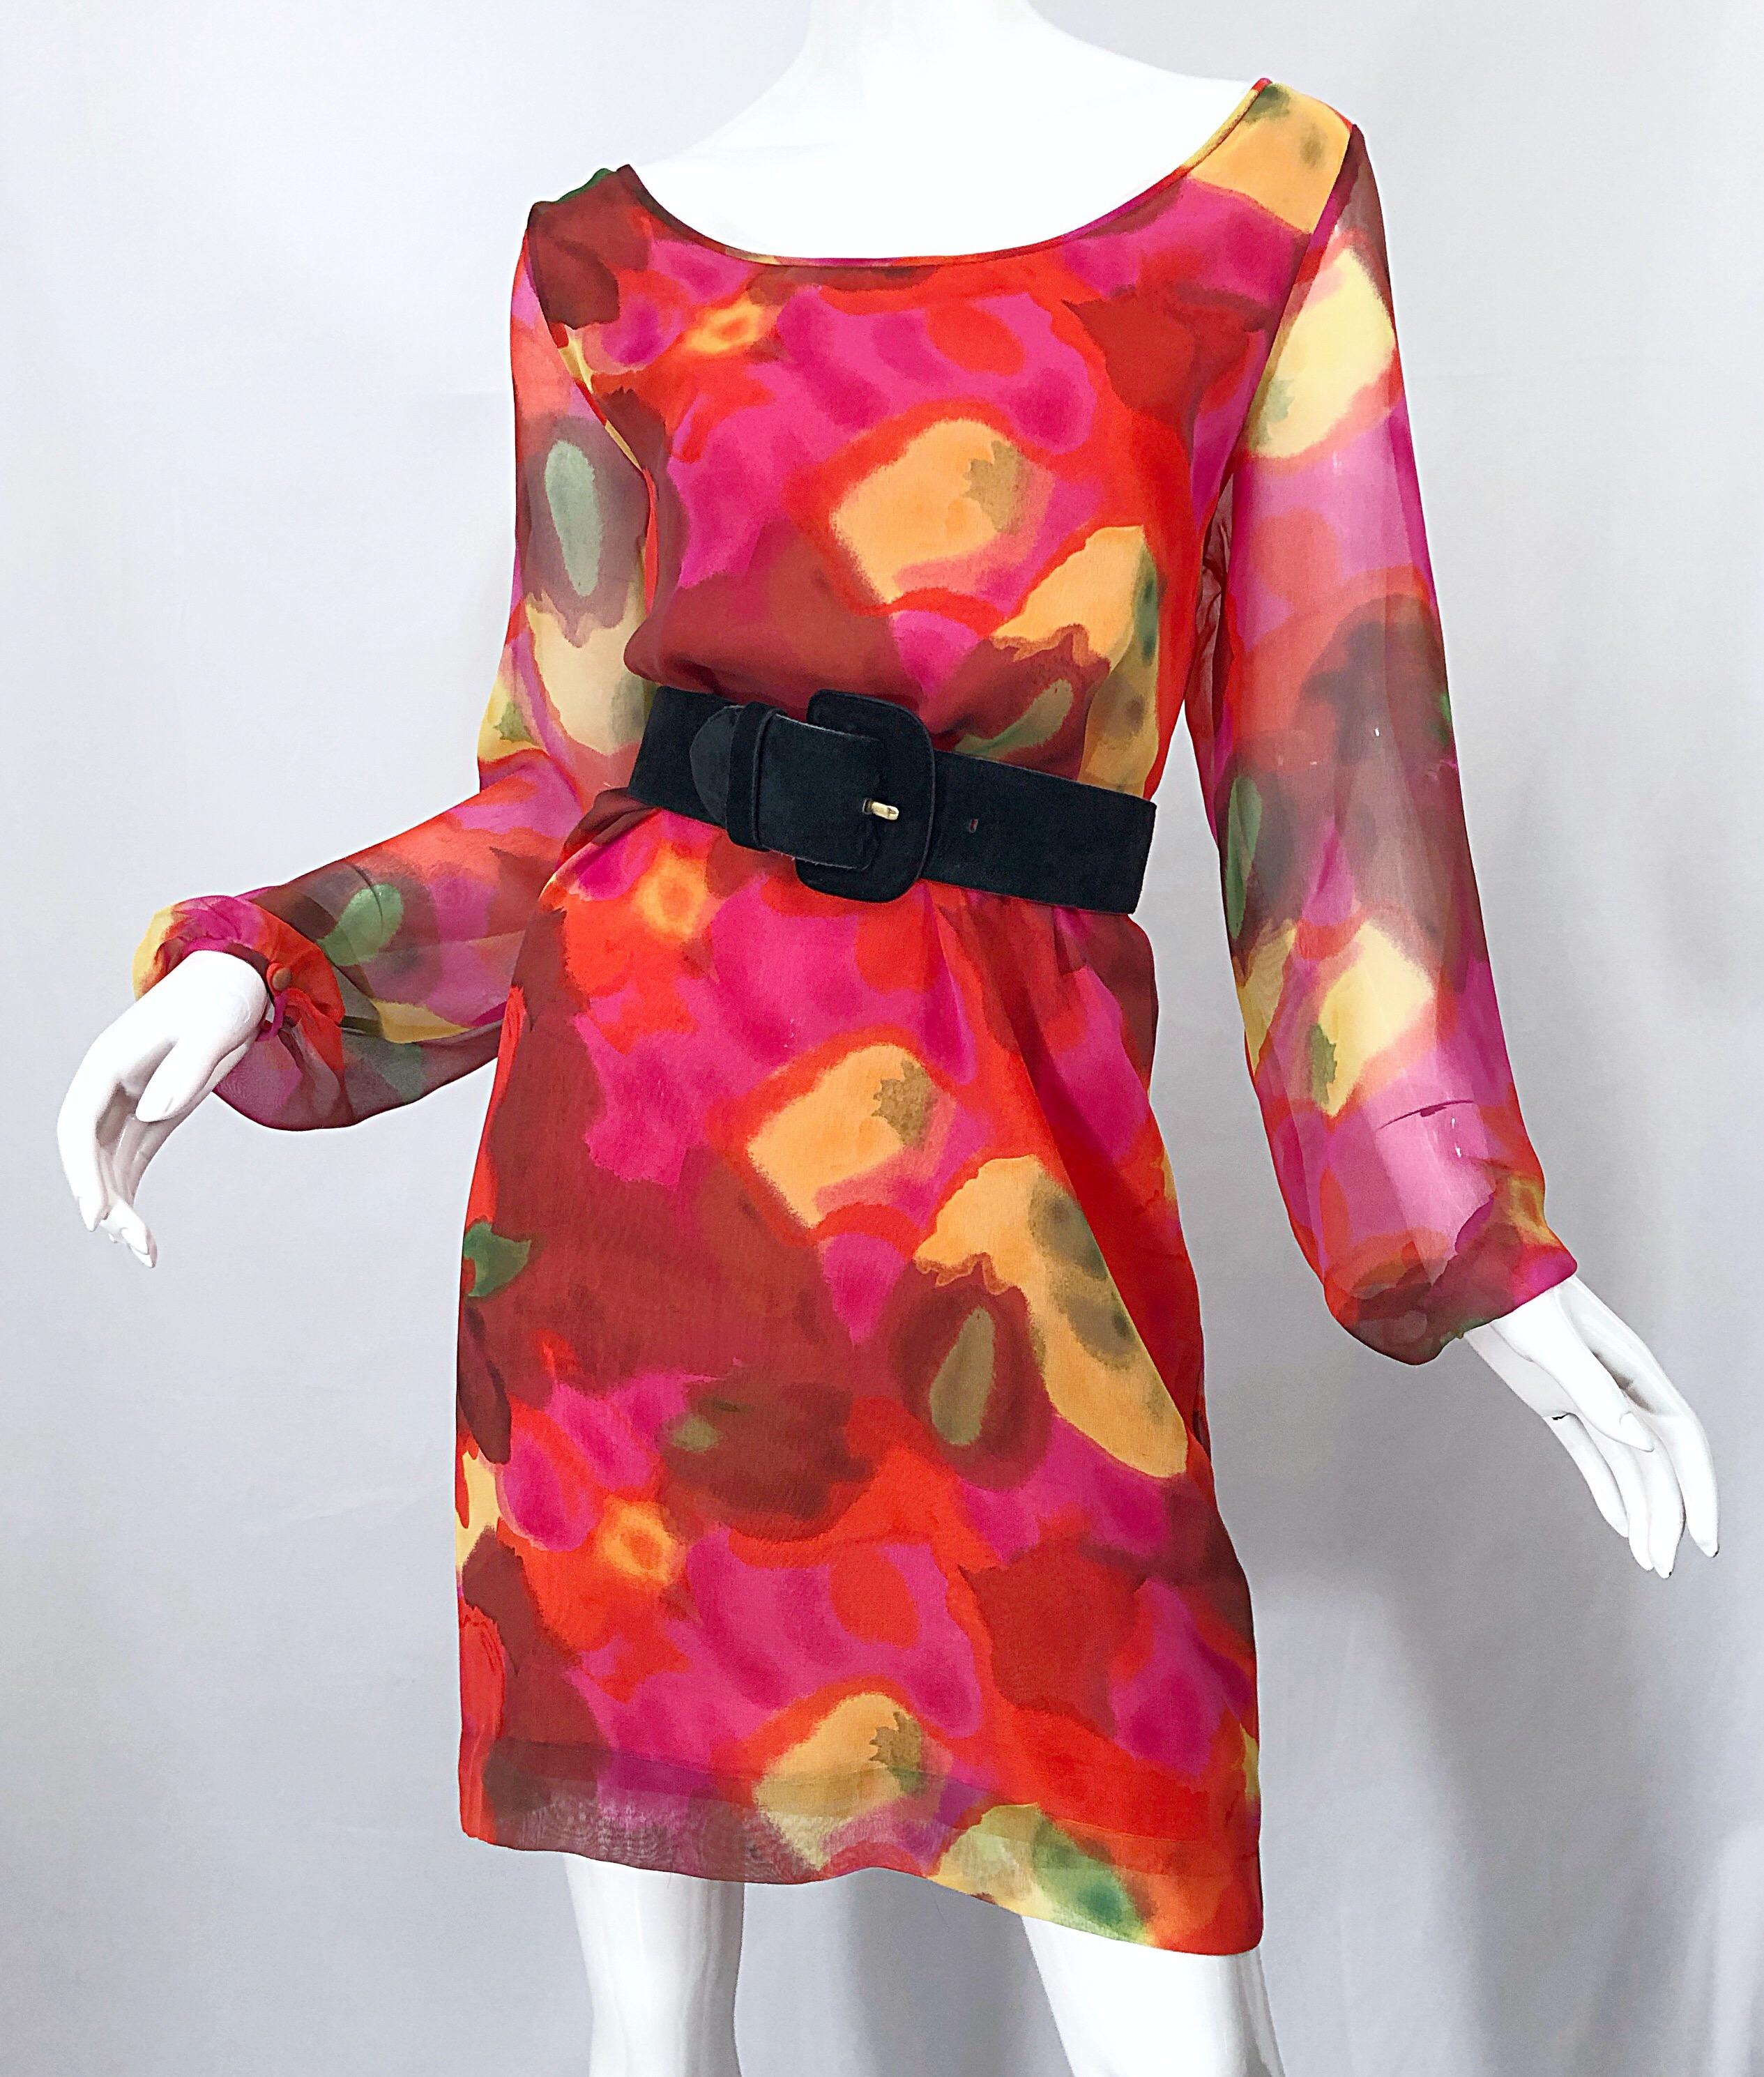 Women's Vintage Elizabeth Arden Silk Chiffon 1960s Style Hot Pink Watercolor Dress For Sale